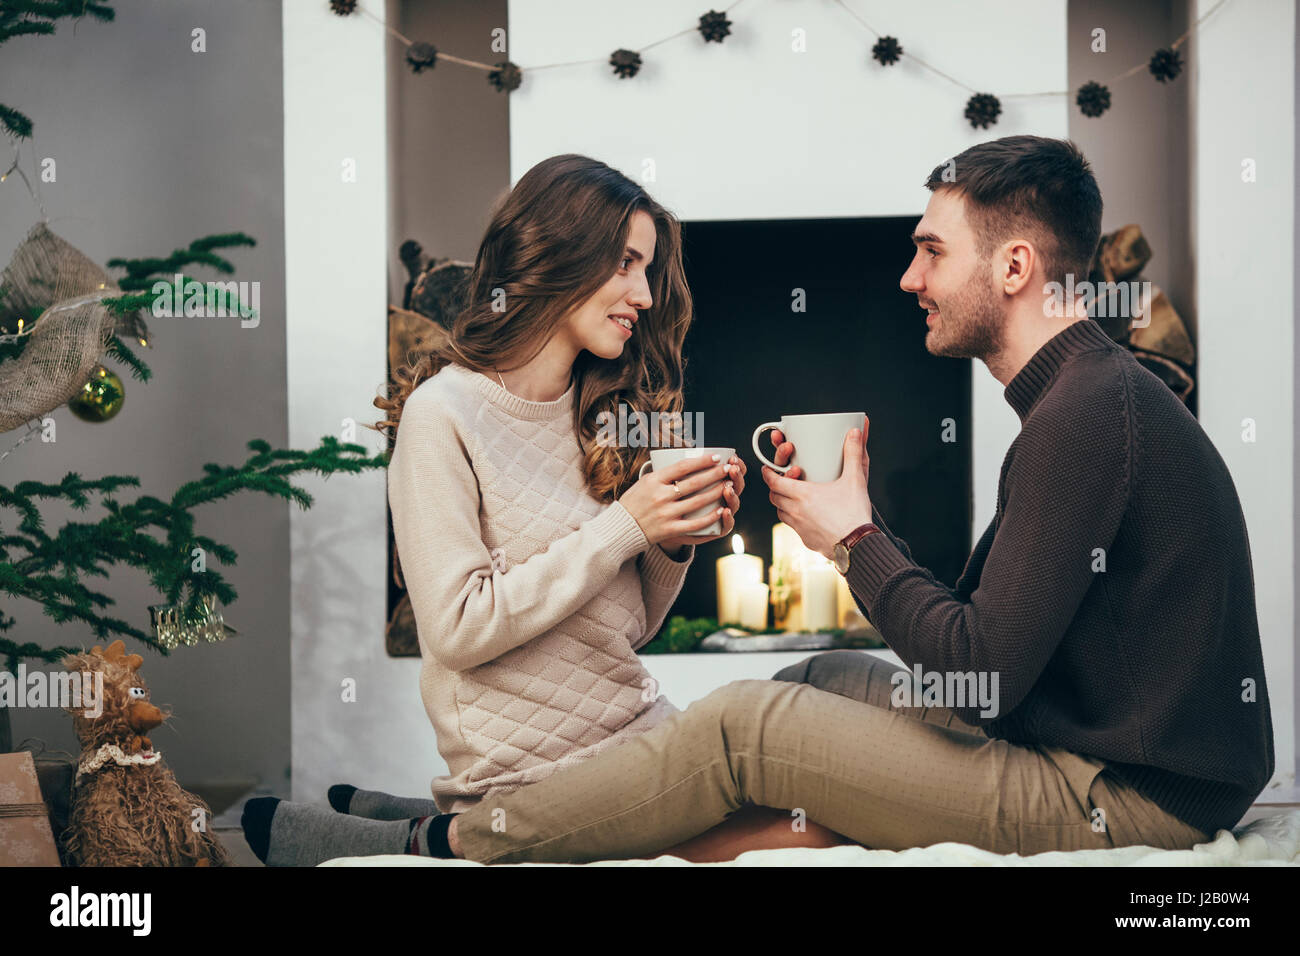 Lächeln, paar mit Kaffee sitzend auf Teppich zu Hause während der Weihnachtszeit Stockfoto